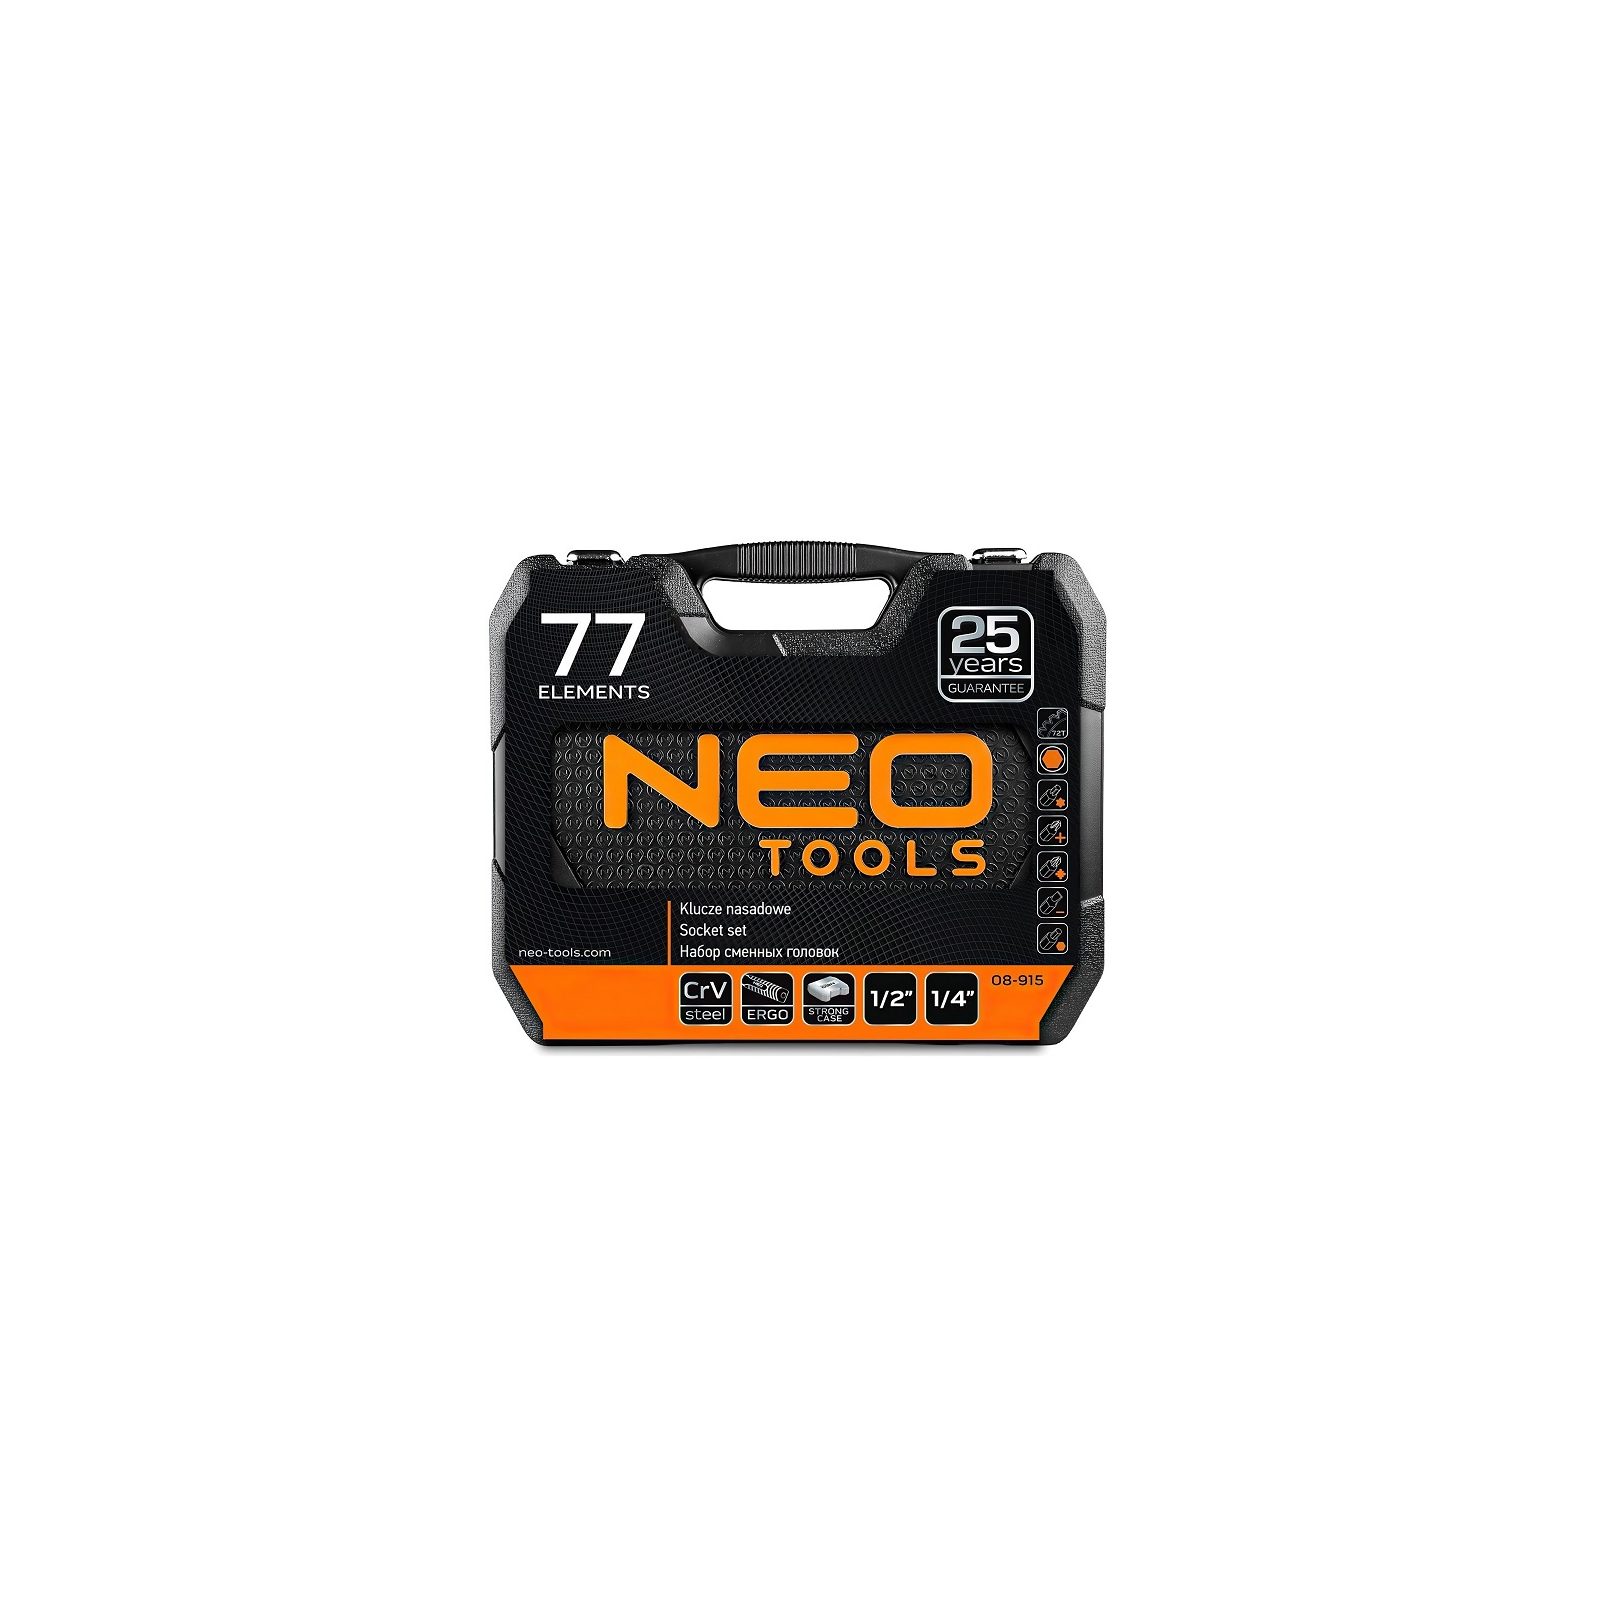 Набор инструментов Neo Tools 1/2", 1/4", CrV, 77 шт. (08-915) изображение 9